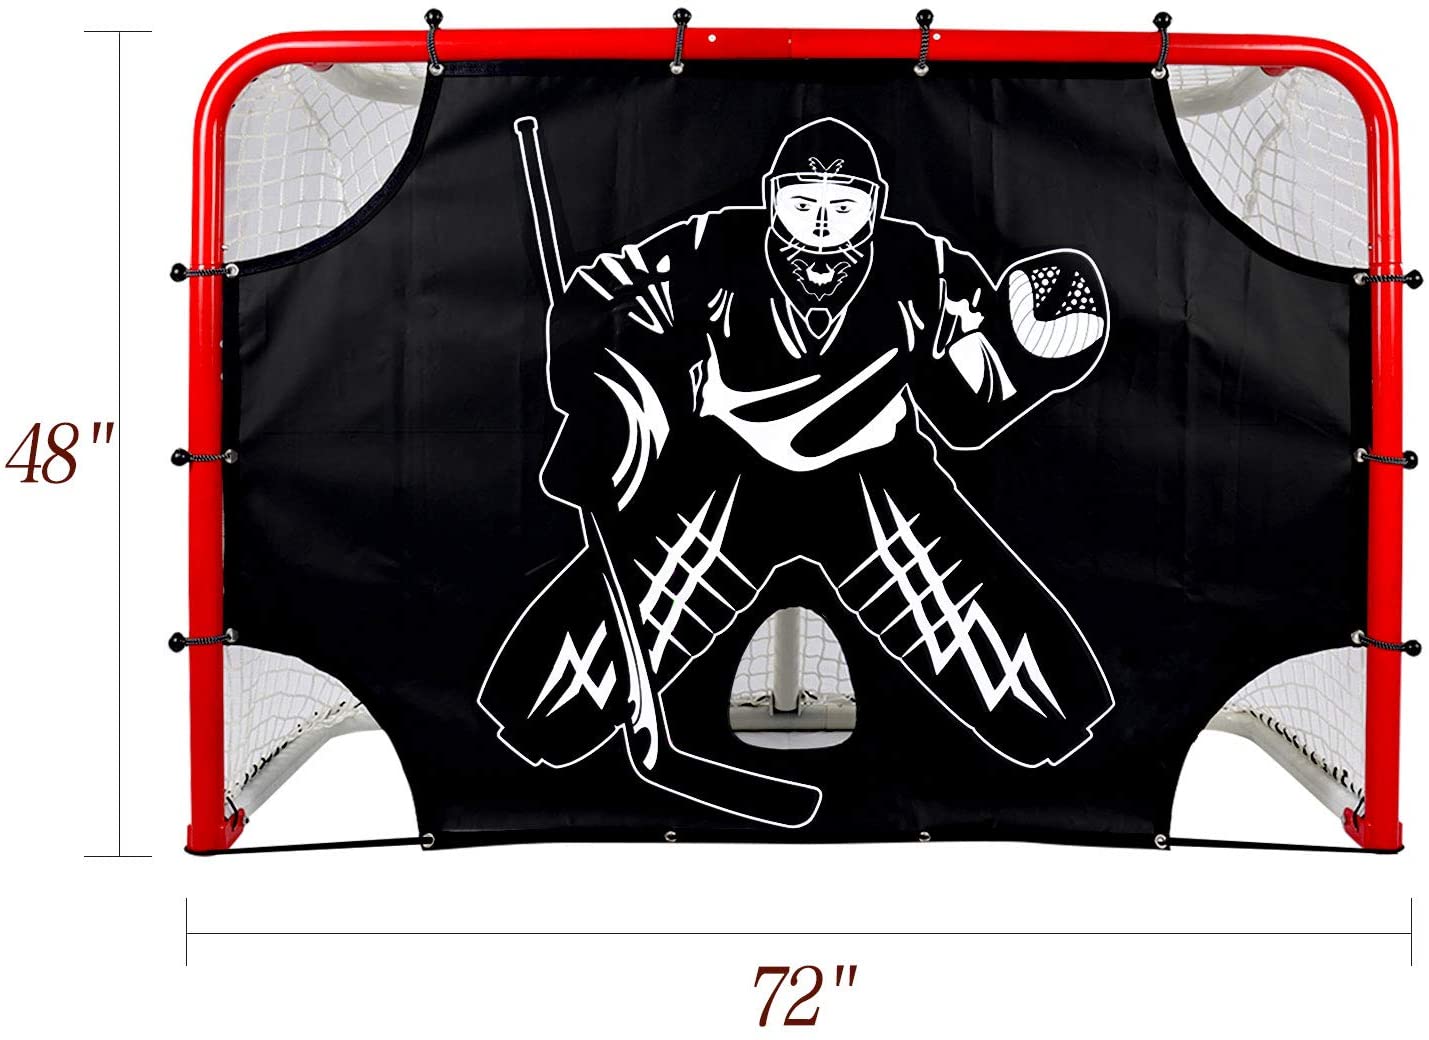 Objetivos de tiro de hockey sobre hielo, precisión de tiro de entrenamiento, ajuste de objetivos de hockey de portería de 72" x 48"